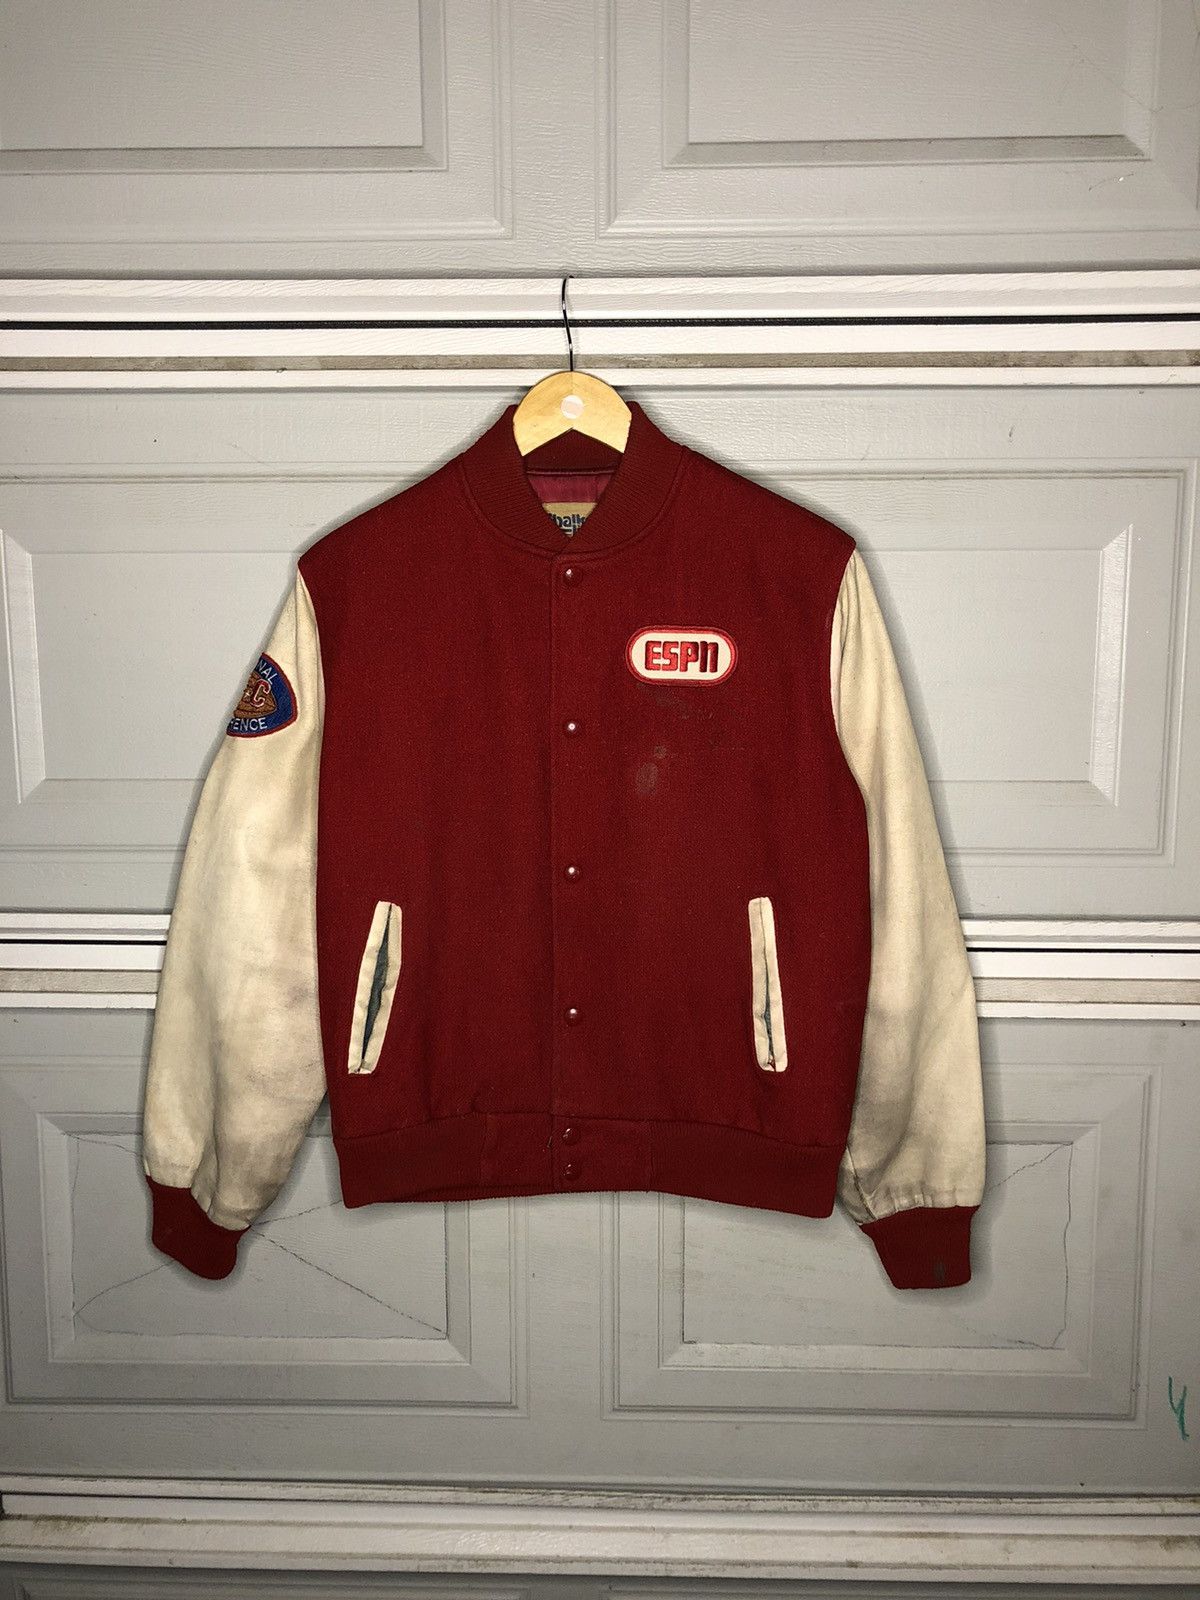 Vintage Vintage Chalk line SF 49ers Jacket